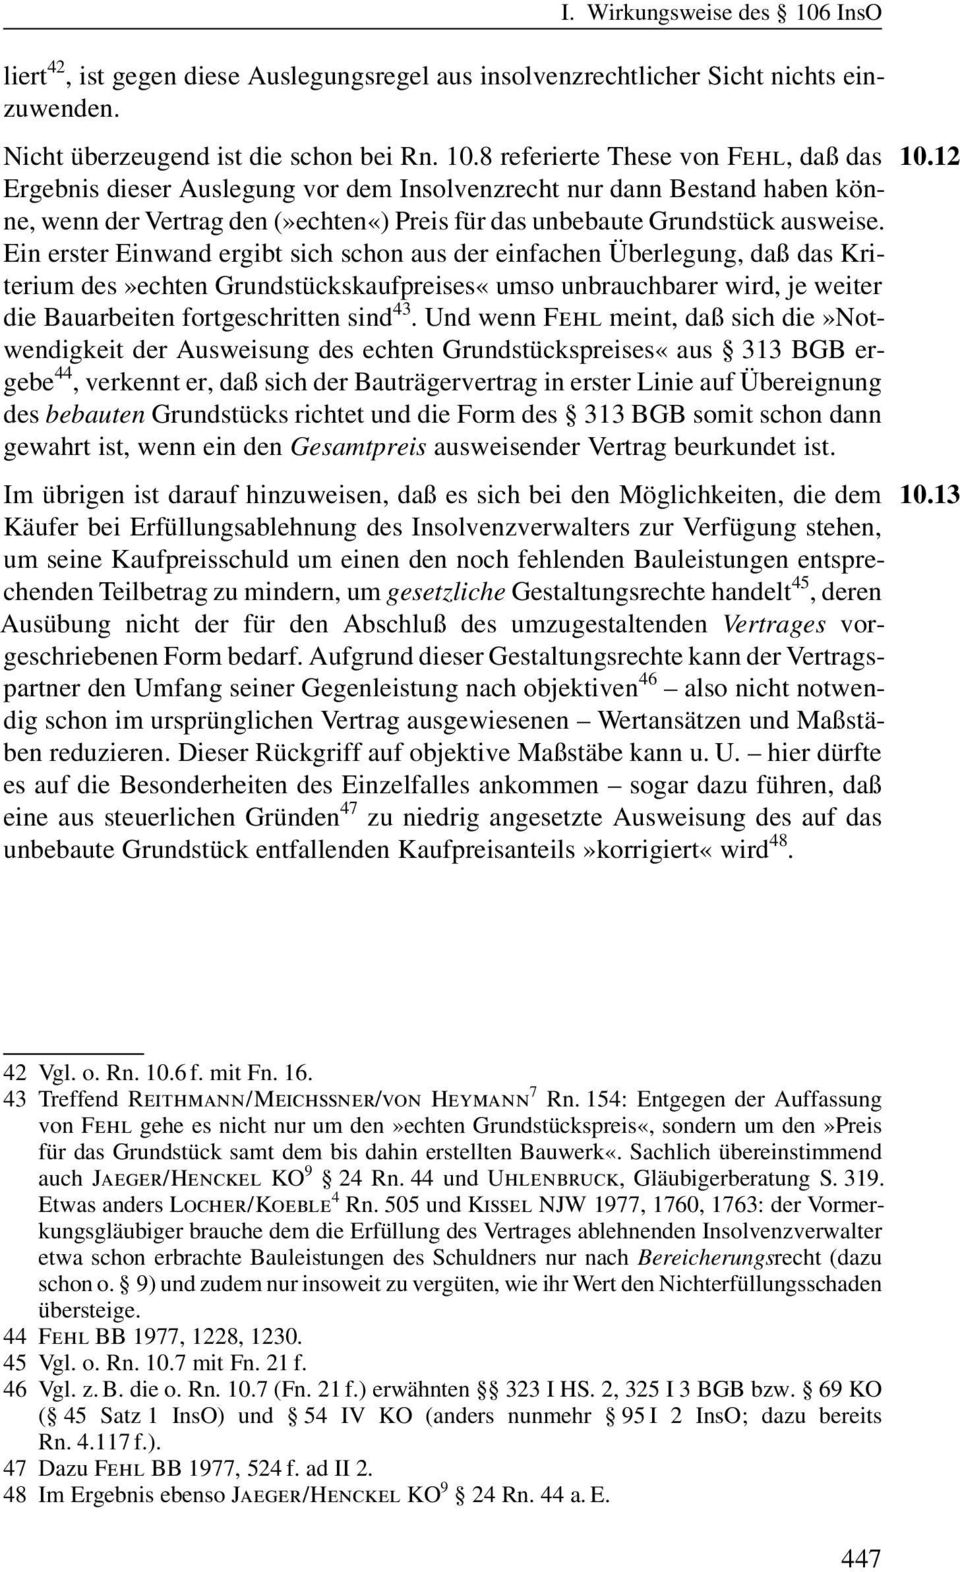 8 referierte These von Fehl, daû das Ergebnis dieser Auslegung vor dem Insolvenzrecht nur dann Bestand haben könne, wenn der Vertrag den»echten«) Preis für das unbebaute Grundstückausweise.